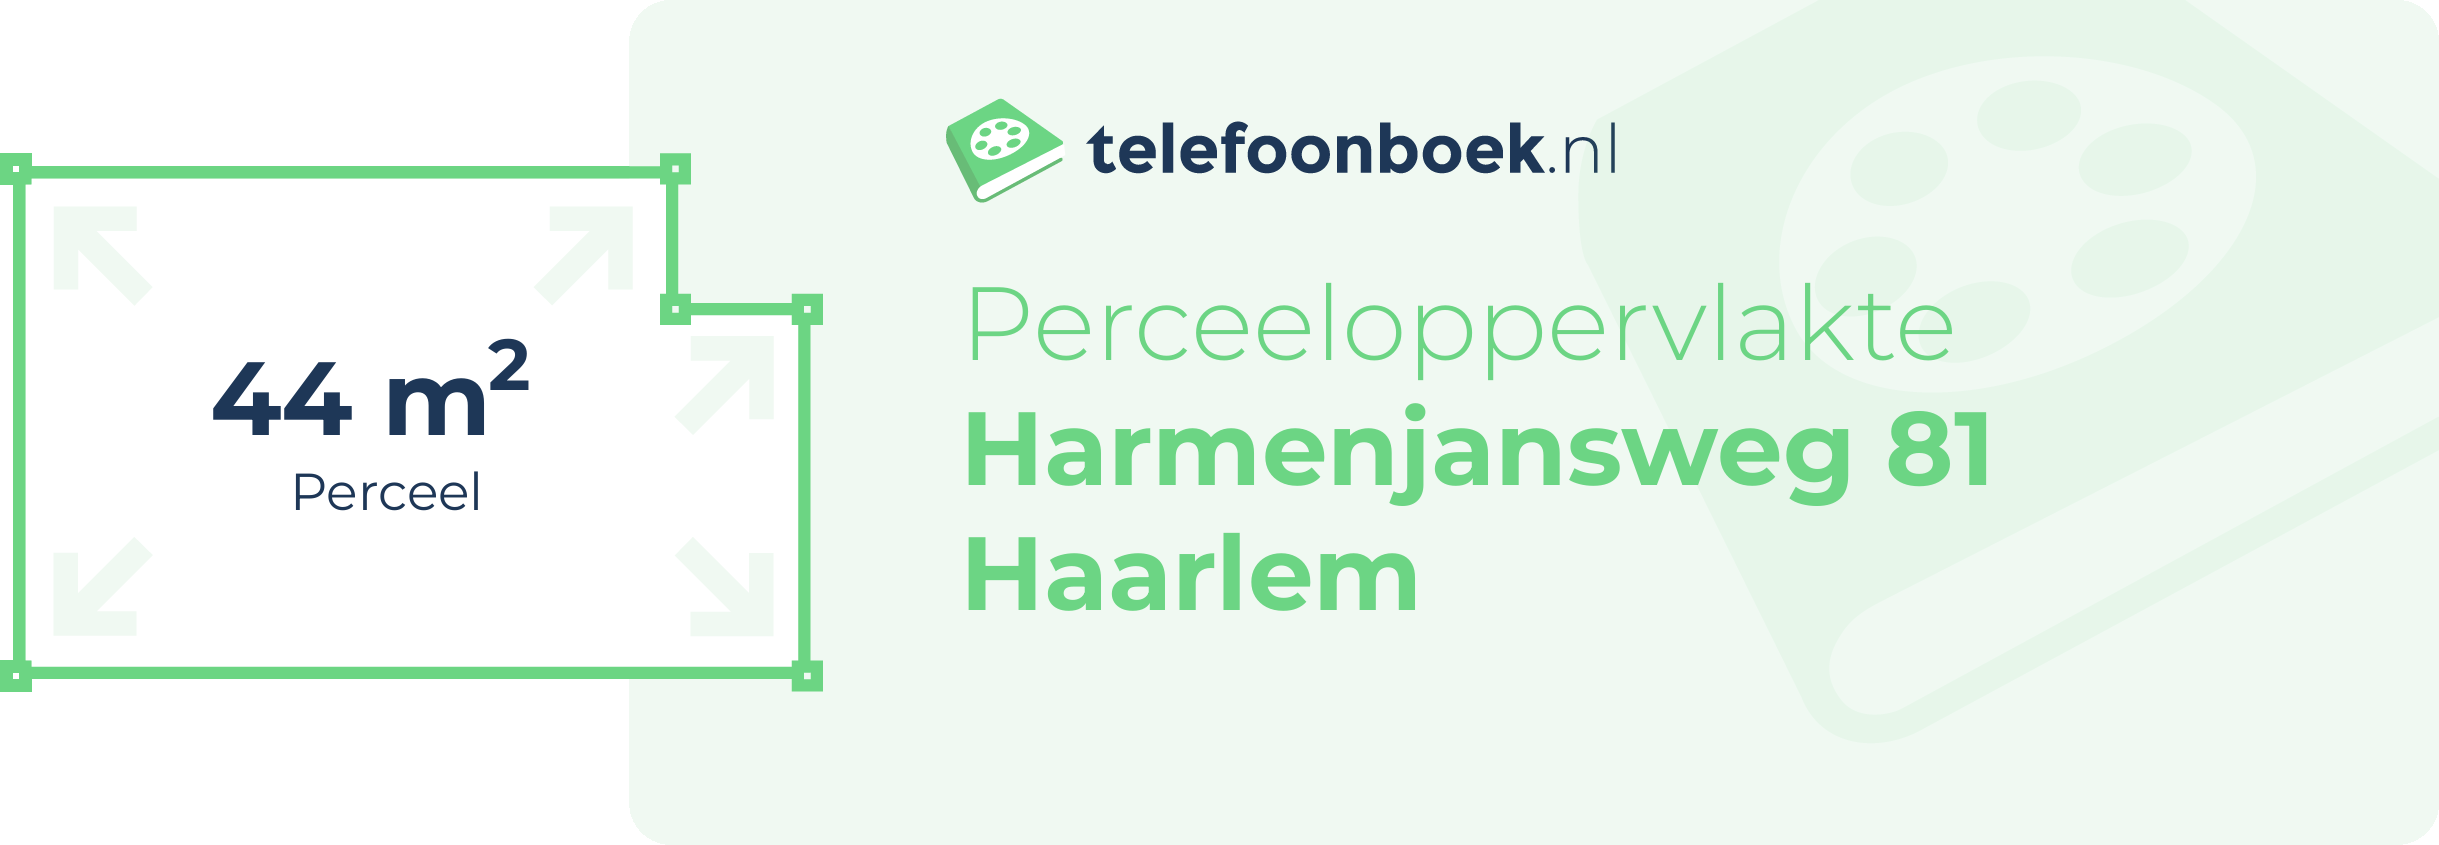 Perceeloppervlakte Harmenjansweg 81 Haarlem